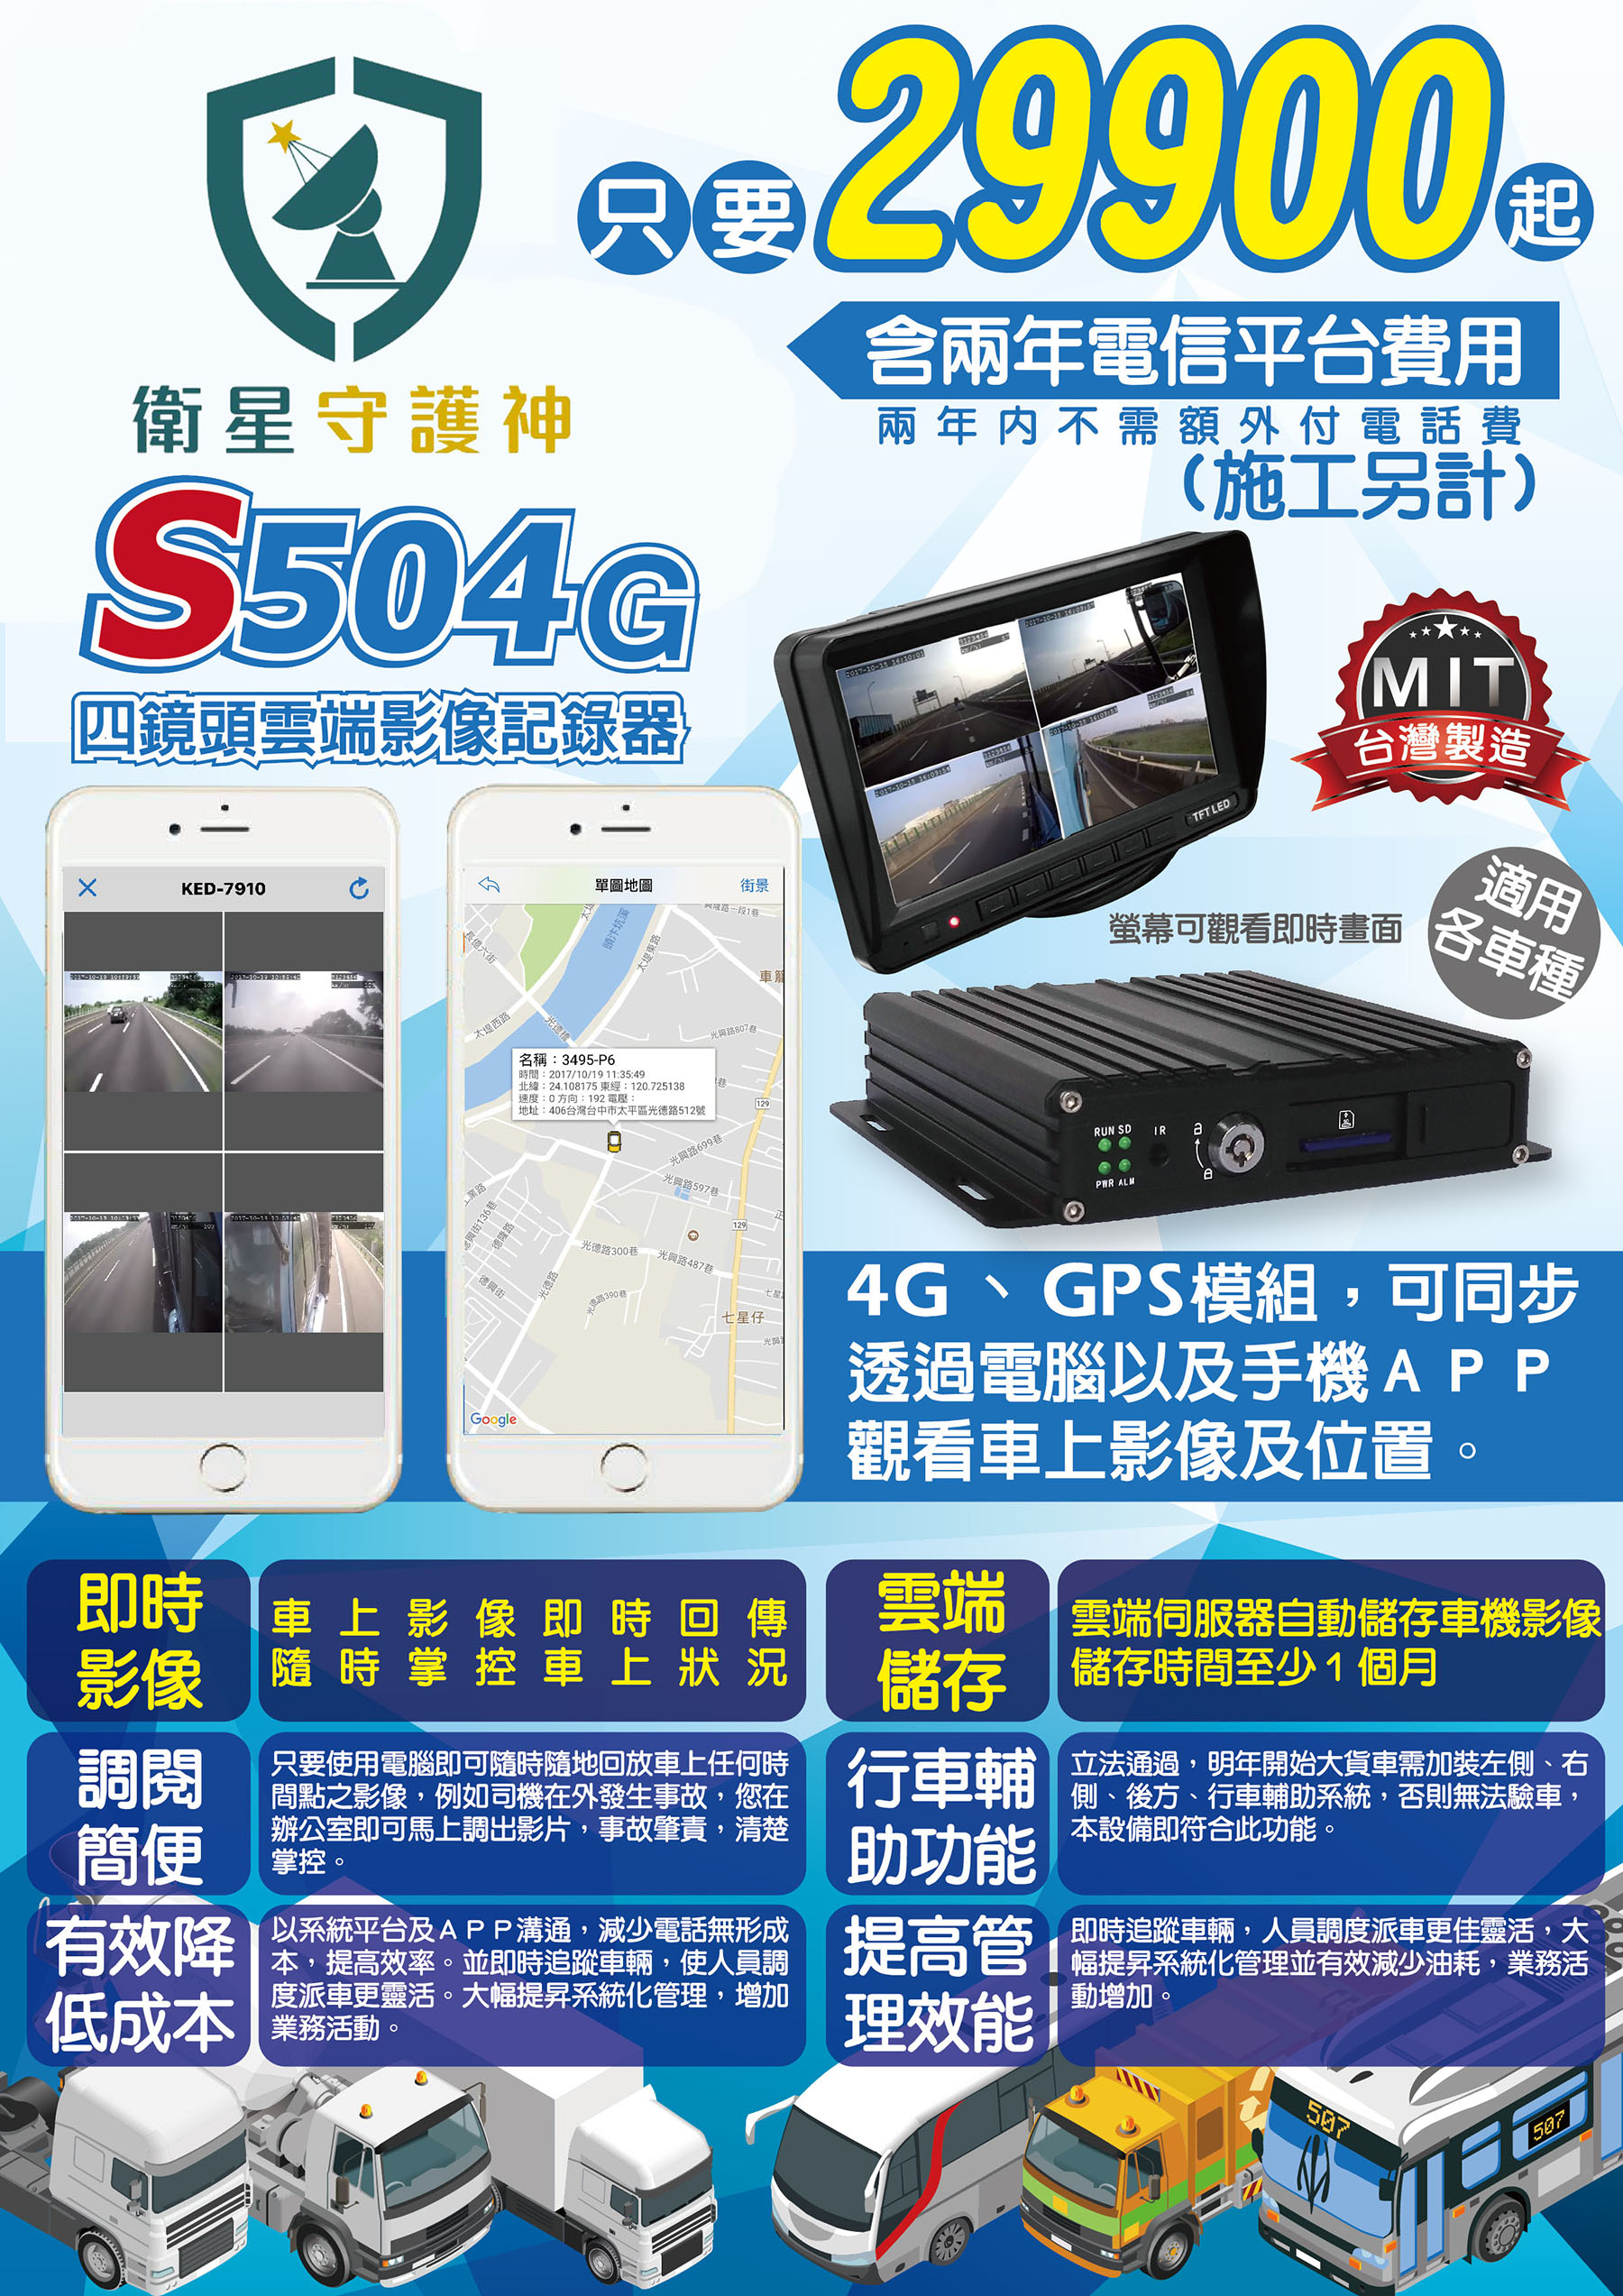 衛星守護神 S504 4G 四鏡頭行車記錄器 有VSCC證明 CAR好錄多鏡頭